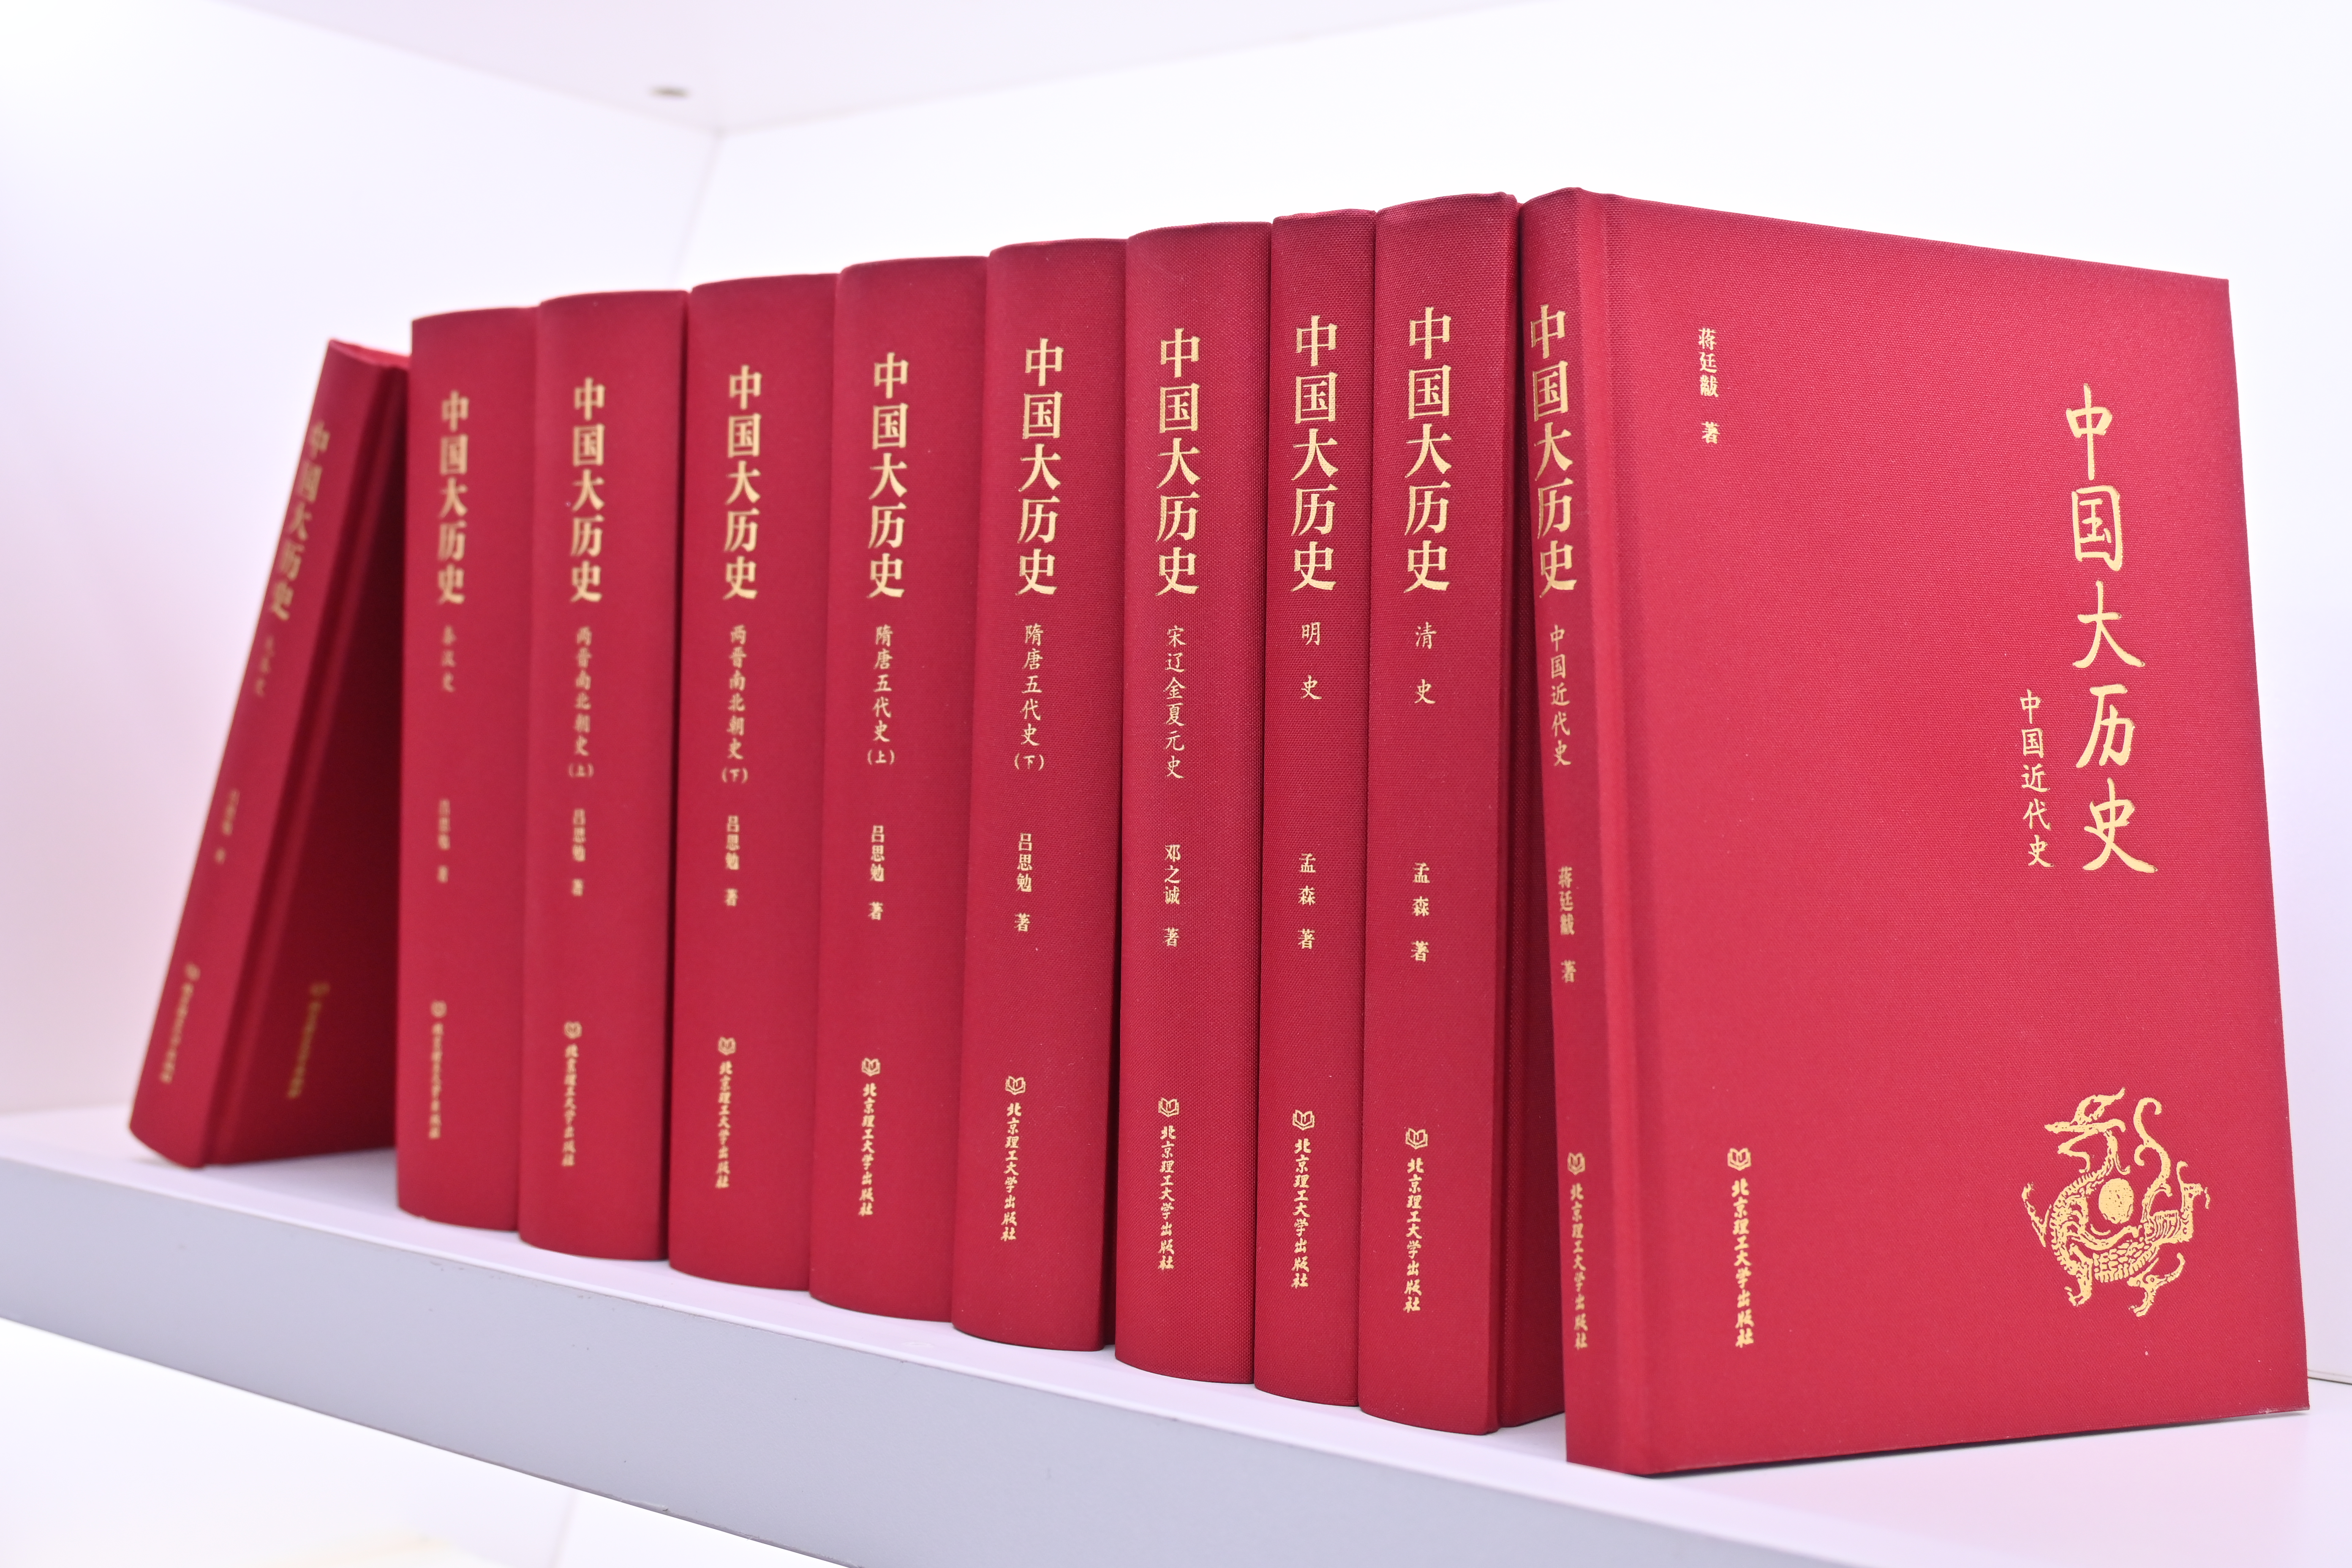 【买一发二】《中国大历史》精装典藏10册+赠《有趣的灵魂 中华短史记》全10册